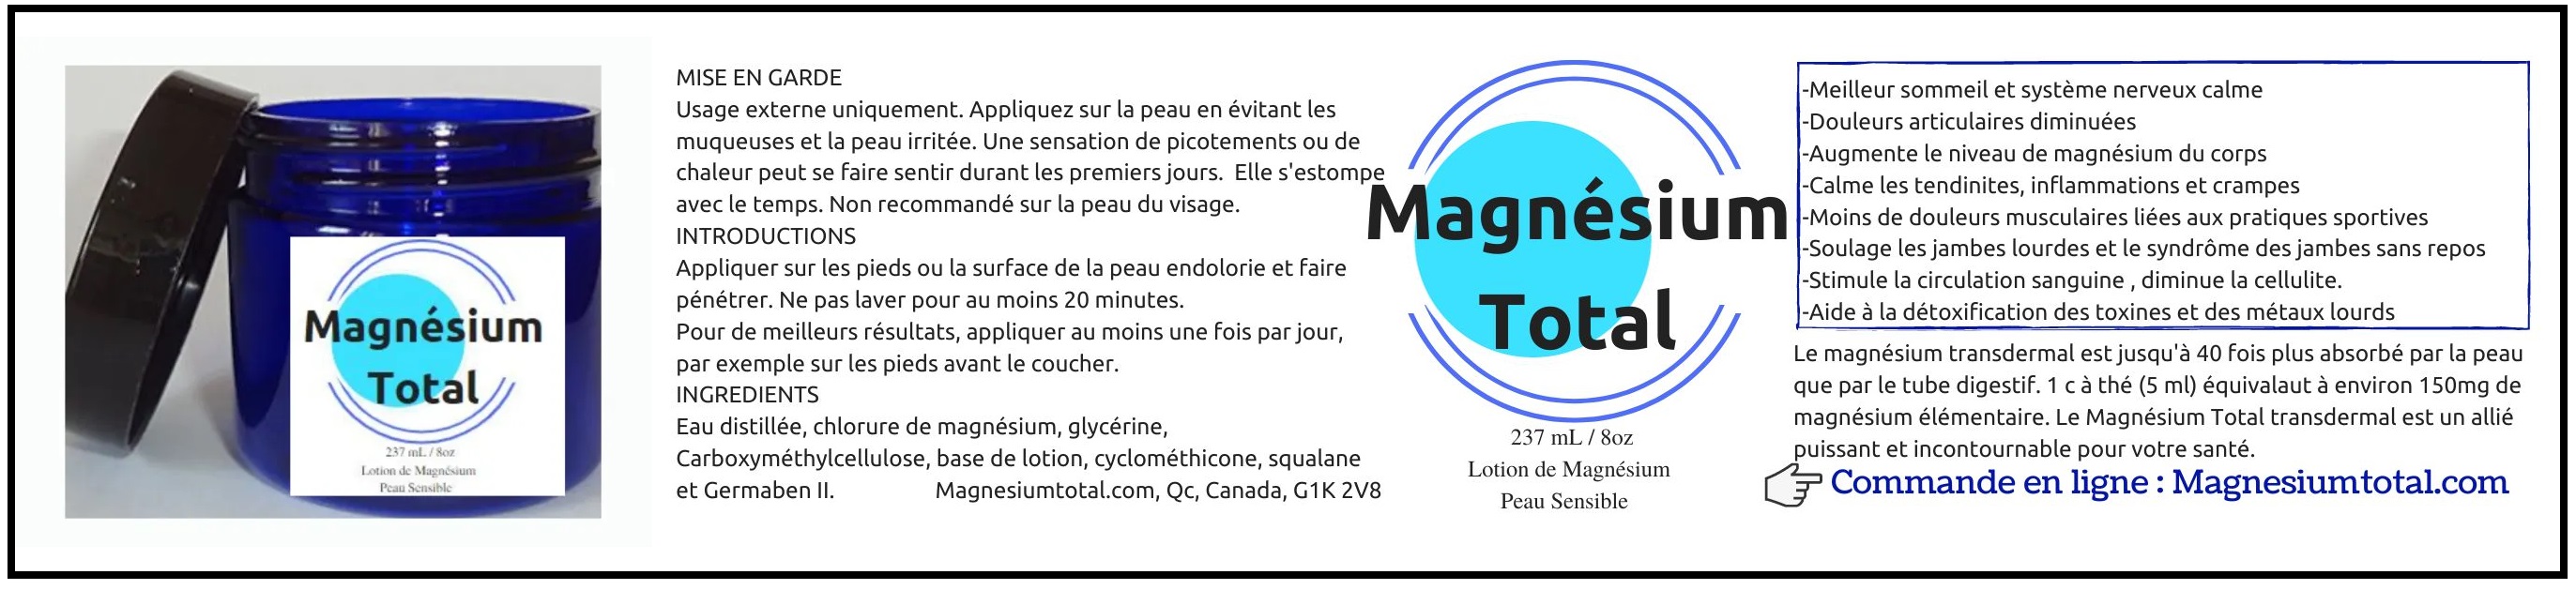 8x2 horizontale etiquette lotion Magnésium Total couleur